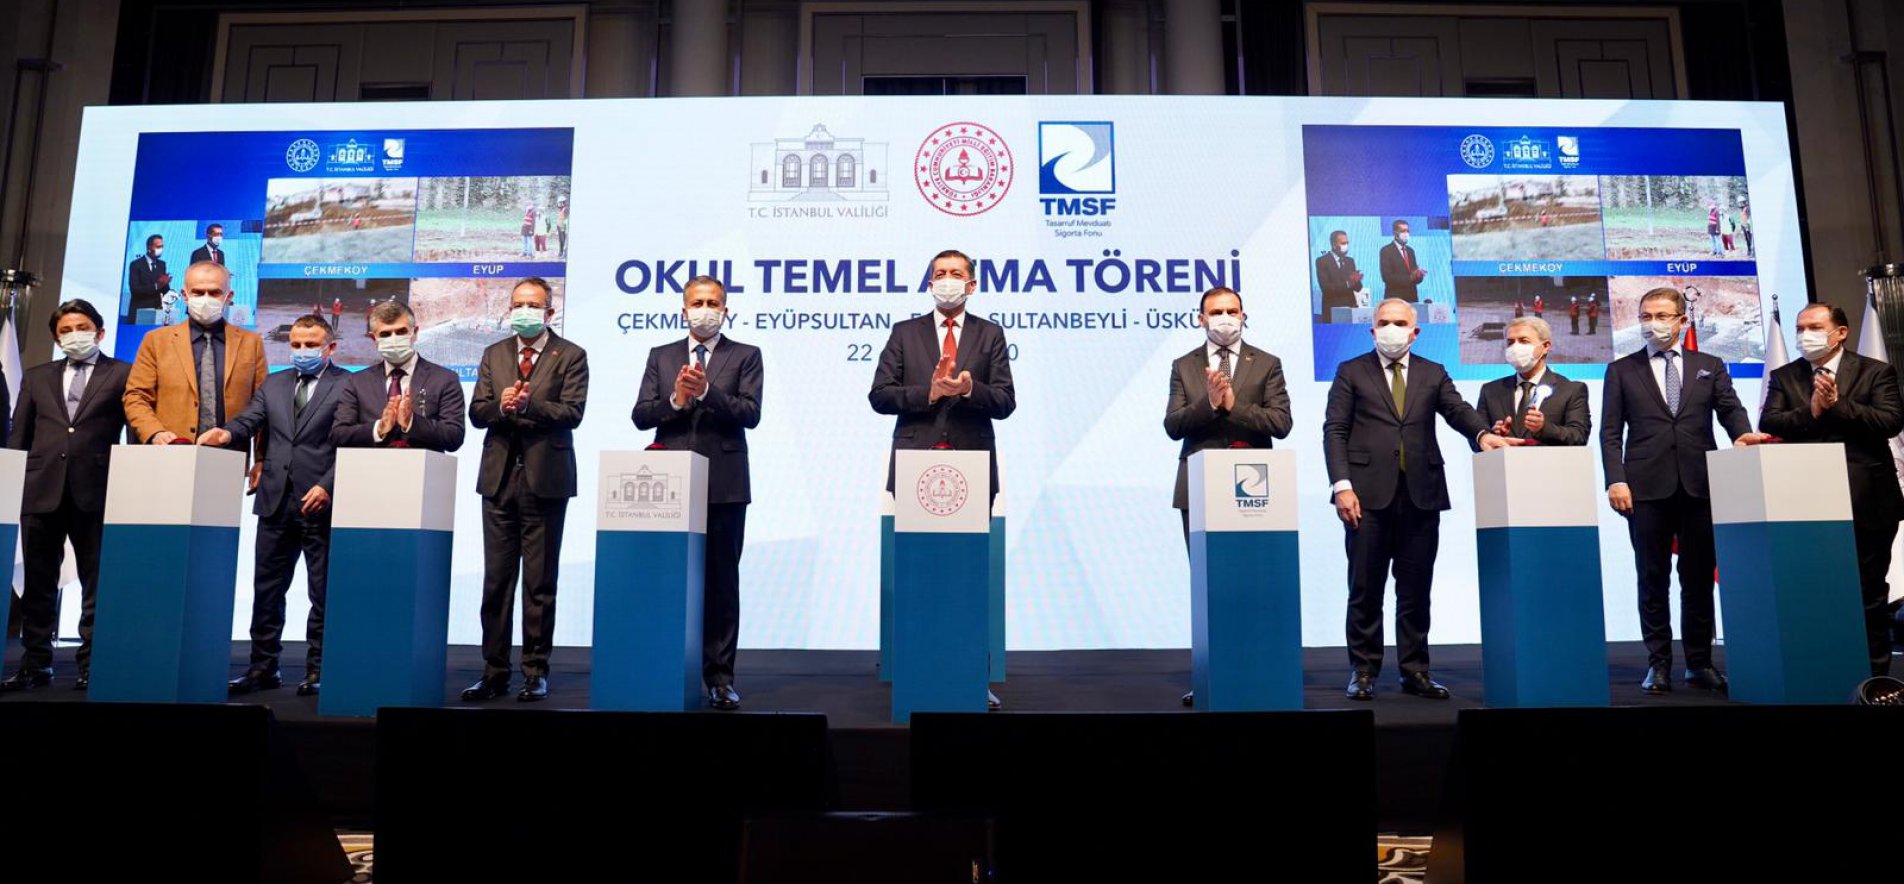 TMSF İle İstanbul'da Yapılacak 6 Okulun Temeli Atıldı